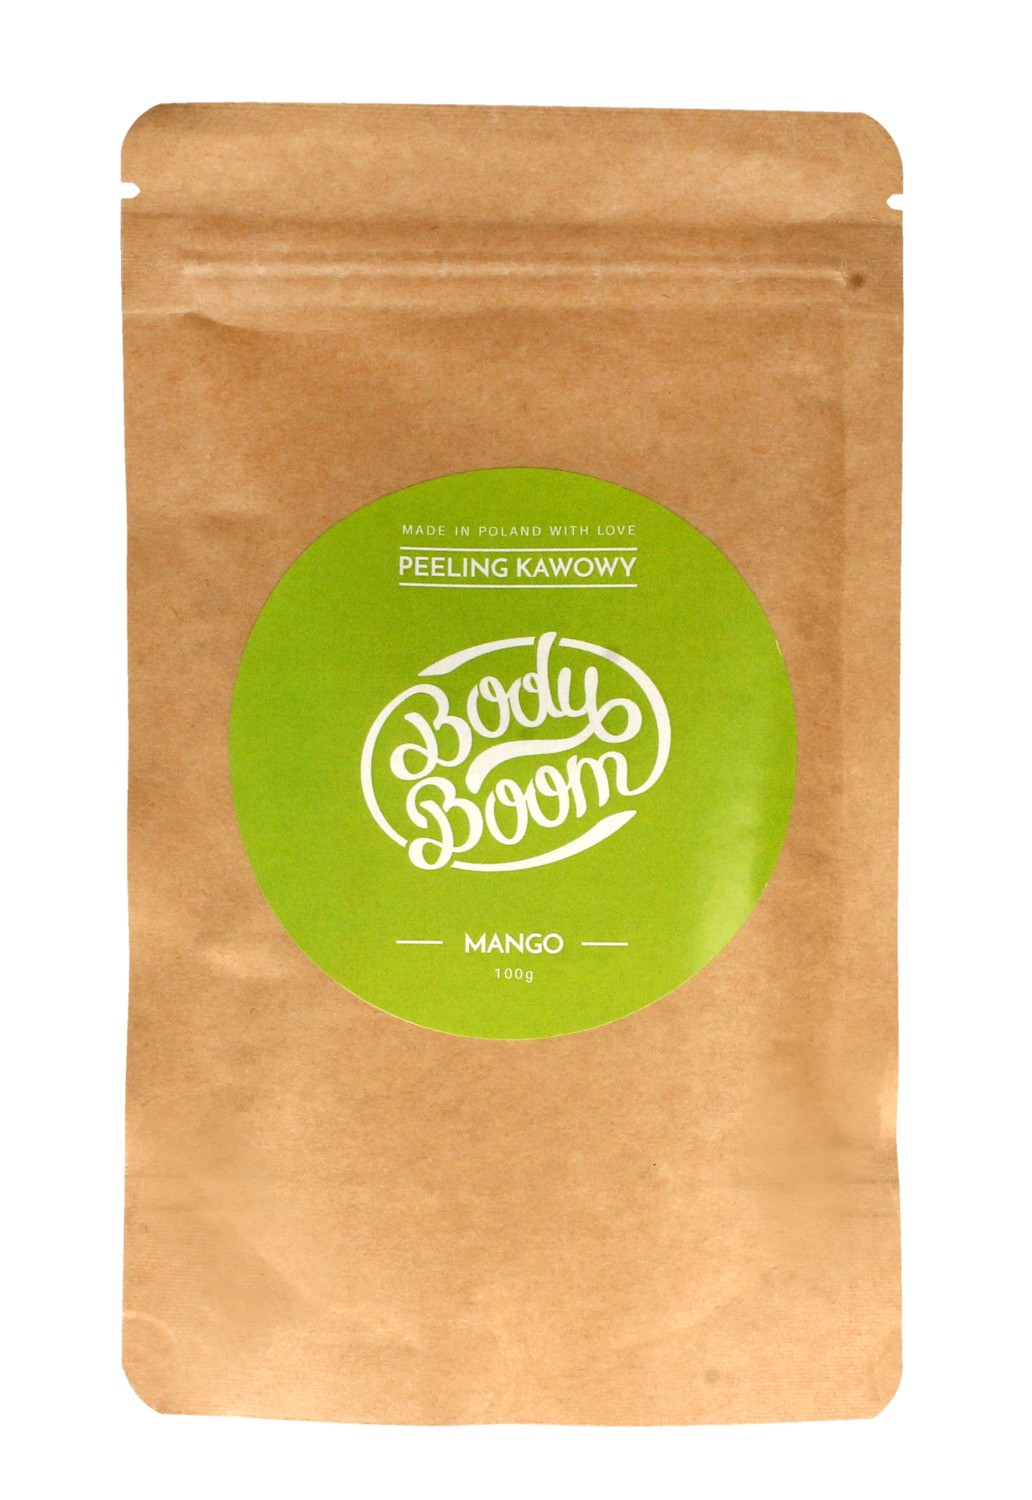 Body Boom Peeling kawowy do ciała - Mango  100g